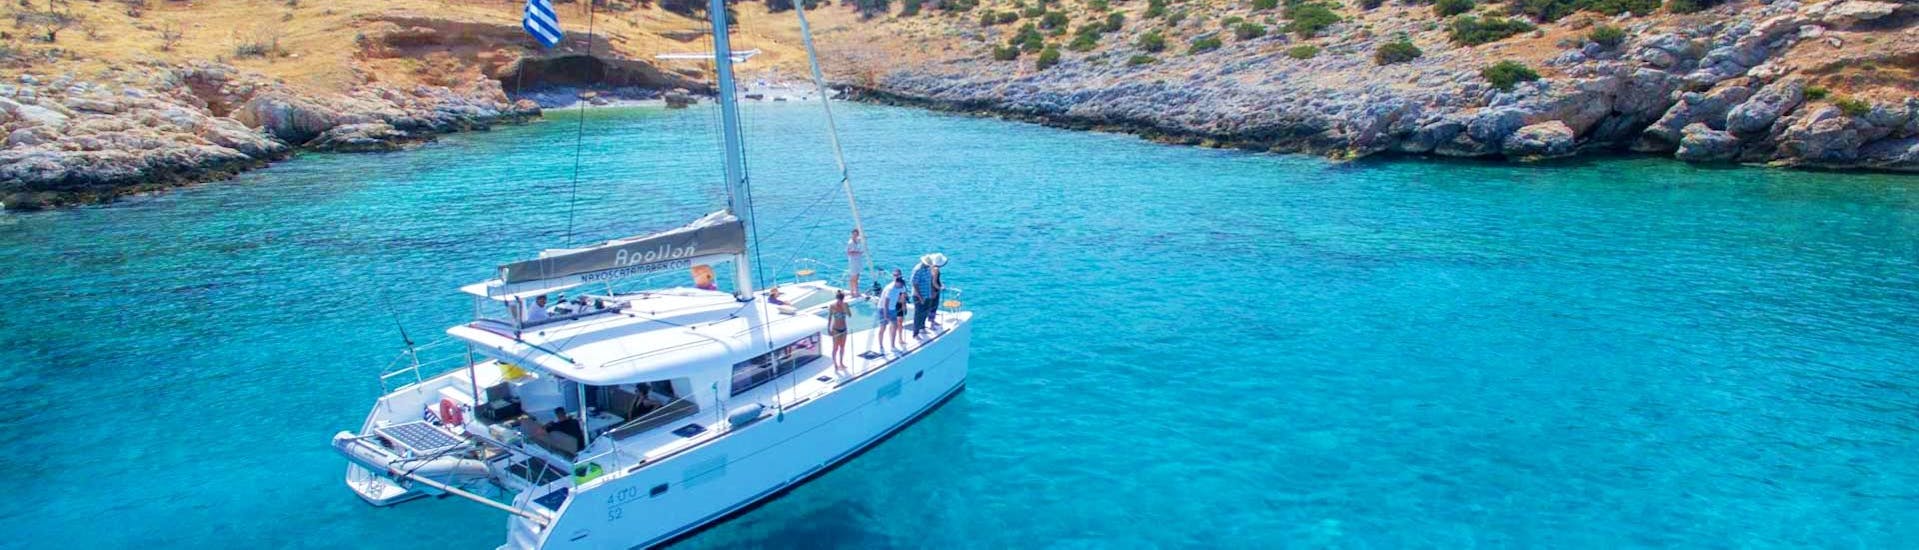 El catamarán Apollon de Naxos Catamaran navega a lo largo de la costa rocosa de las Cícladas durante el Crucero Privado a Vela en un Catamarán de Lujo desde Naxos.